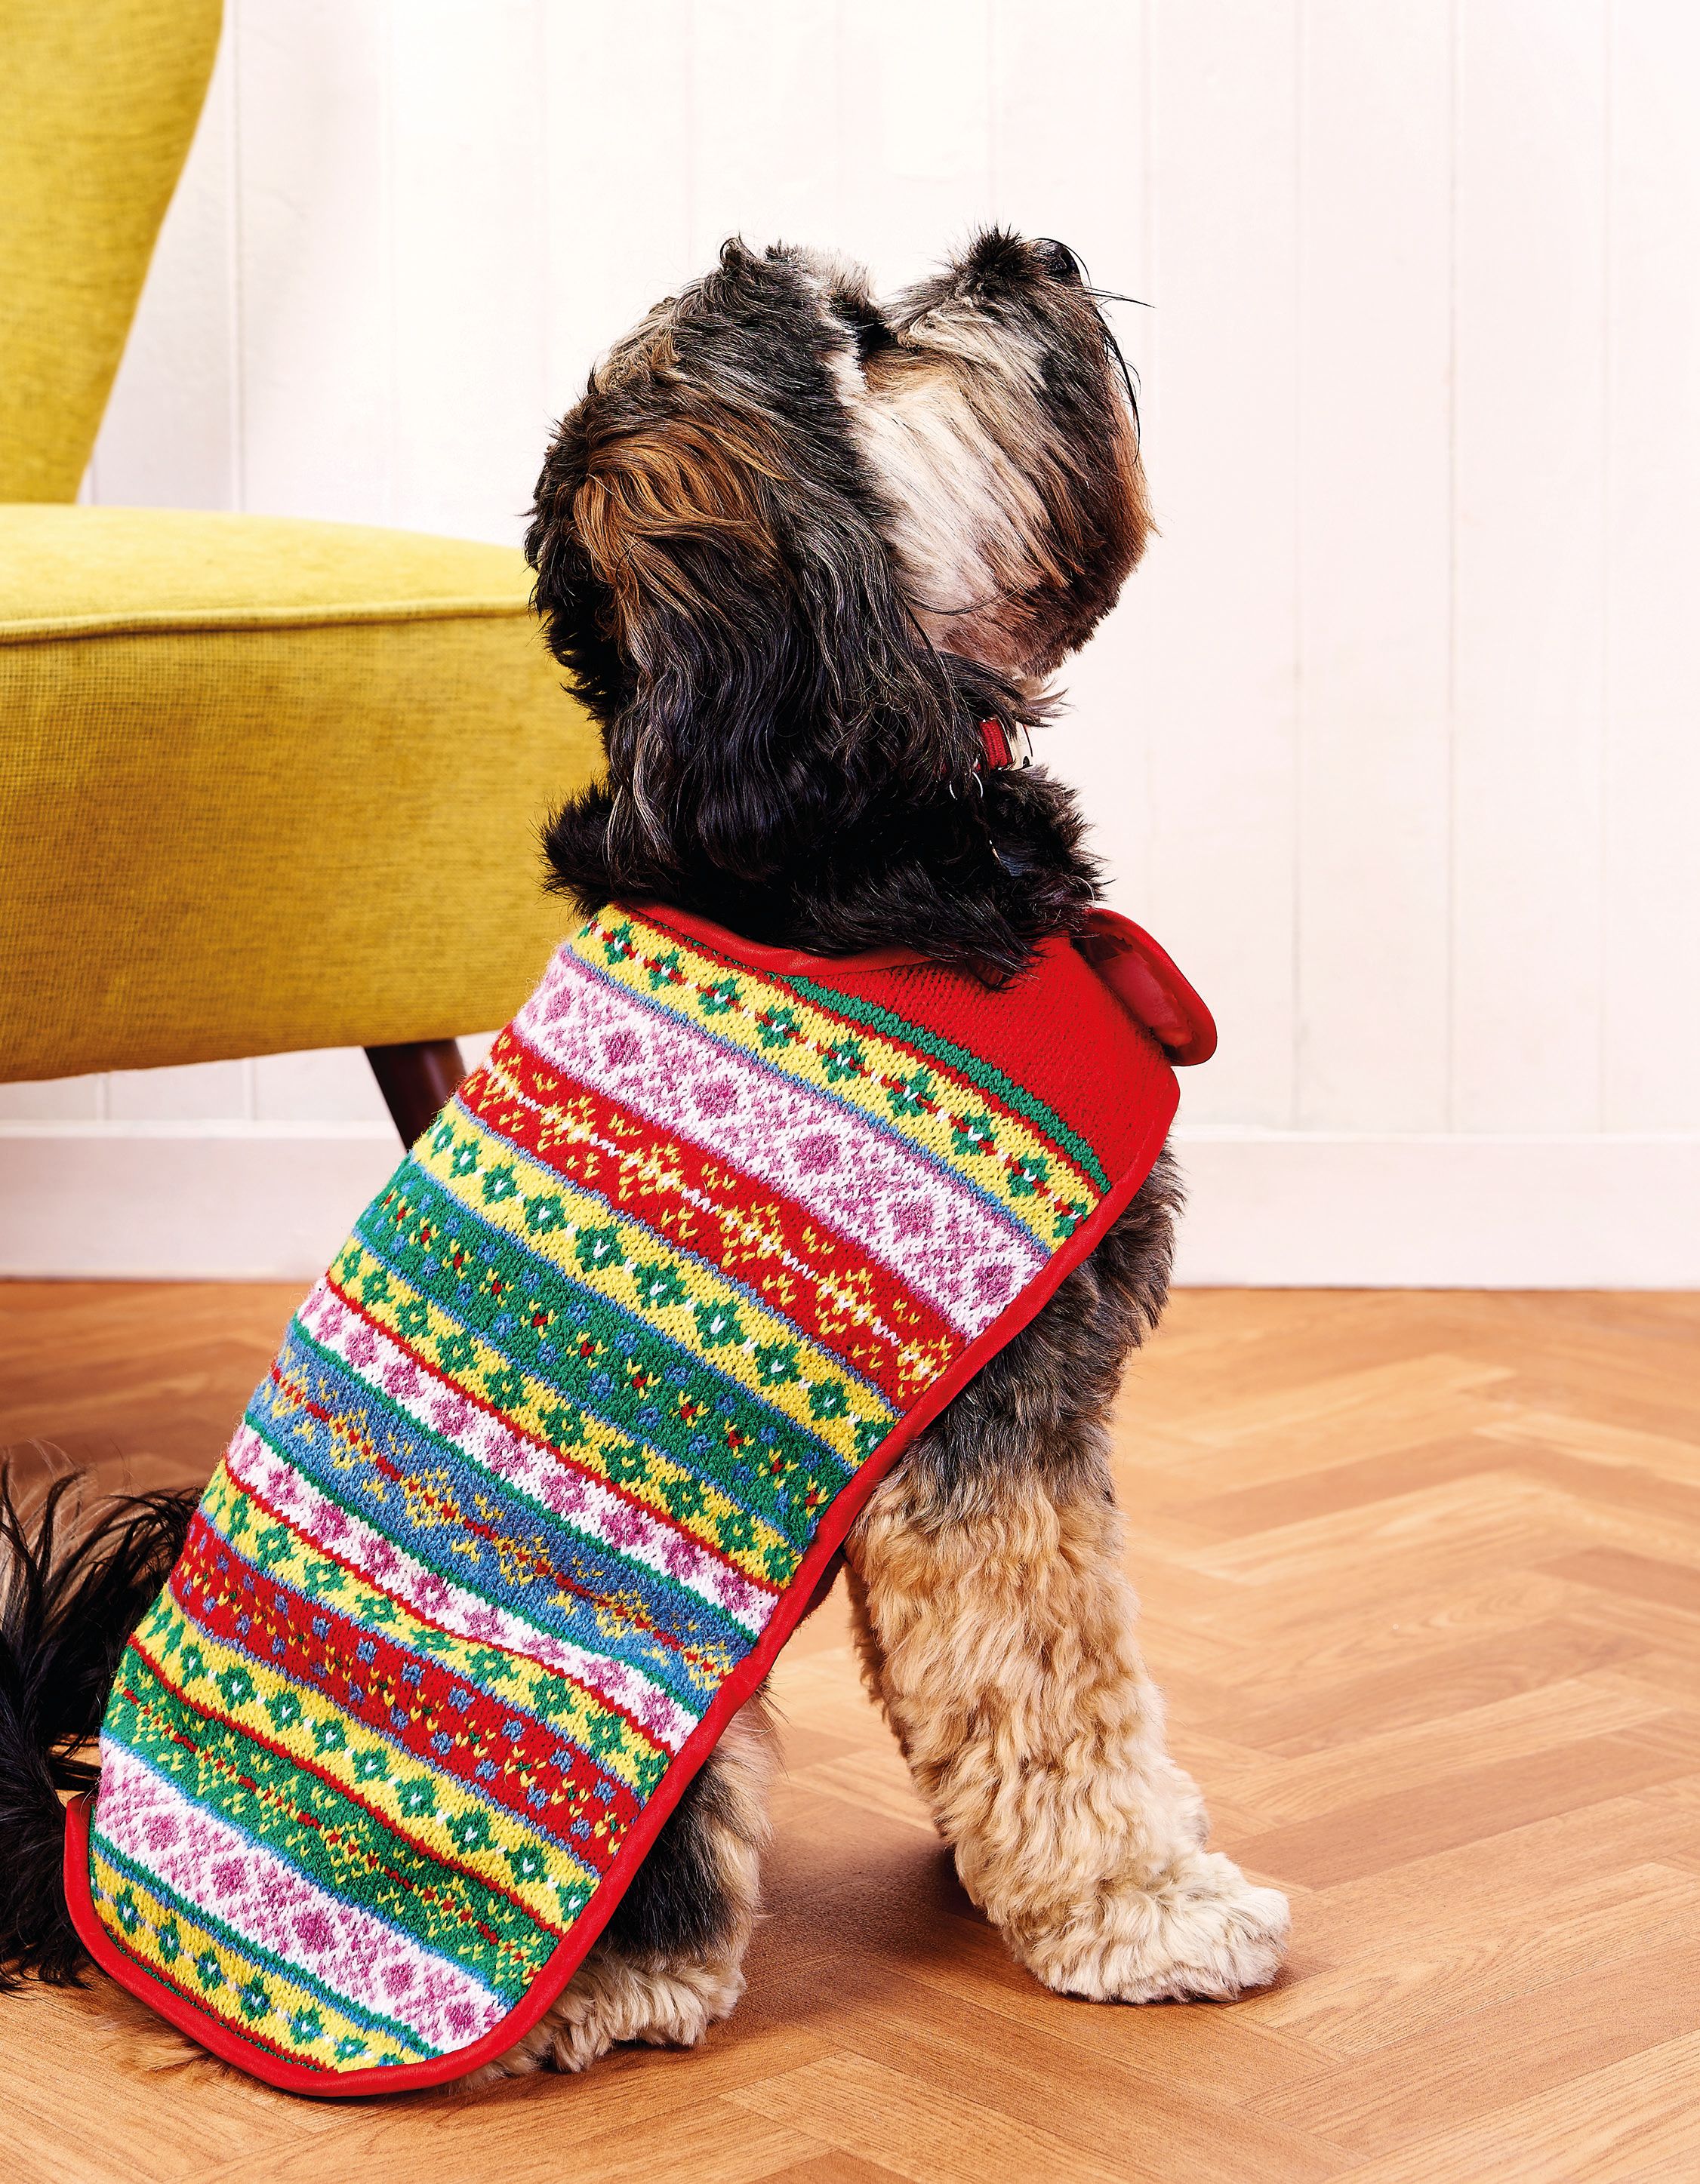 fair-isle-dog-coat-knitting-patterns-let-s-knit-magazine